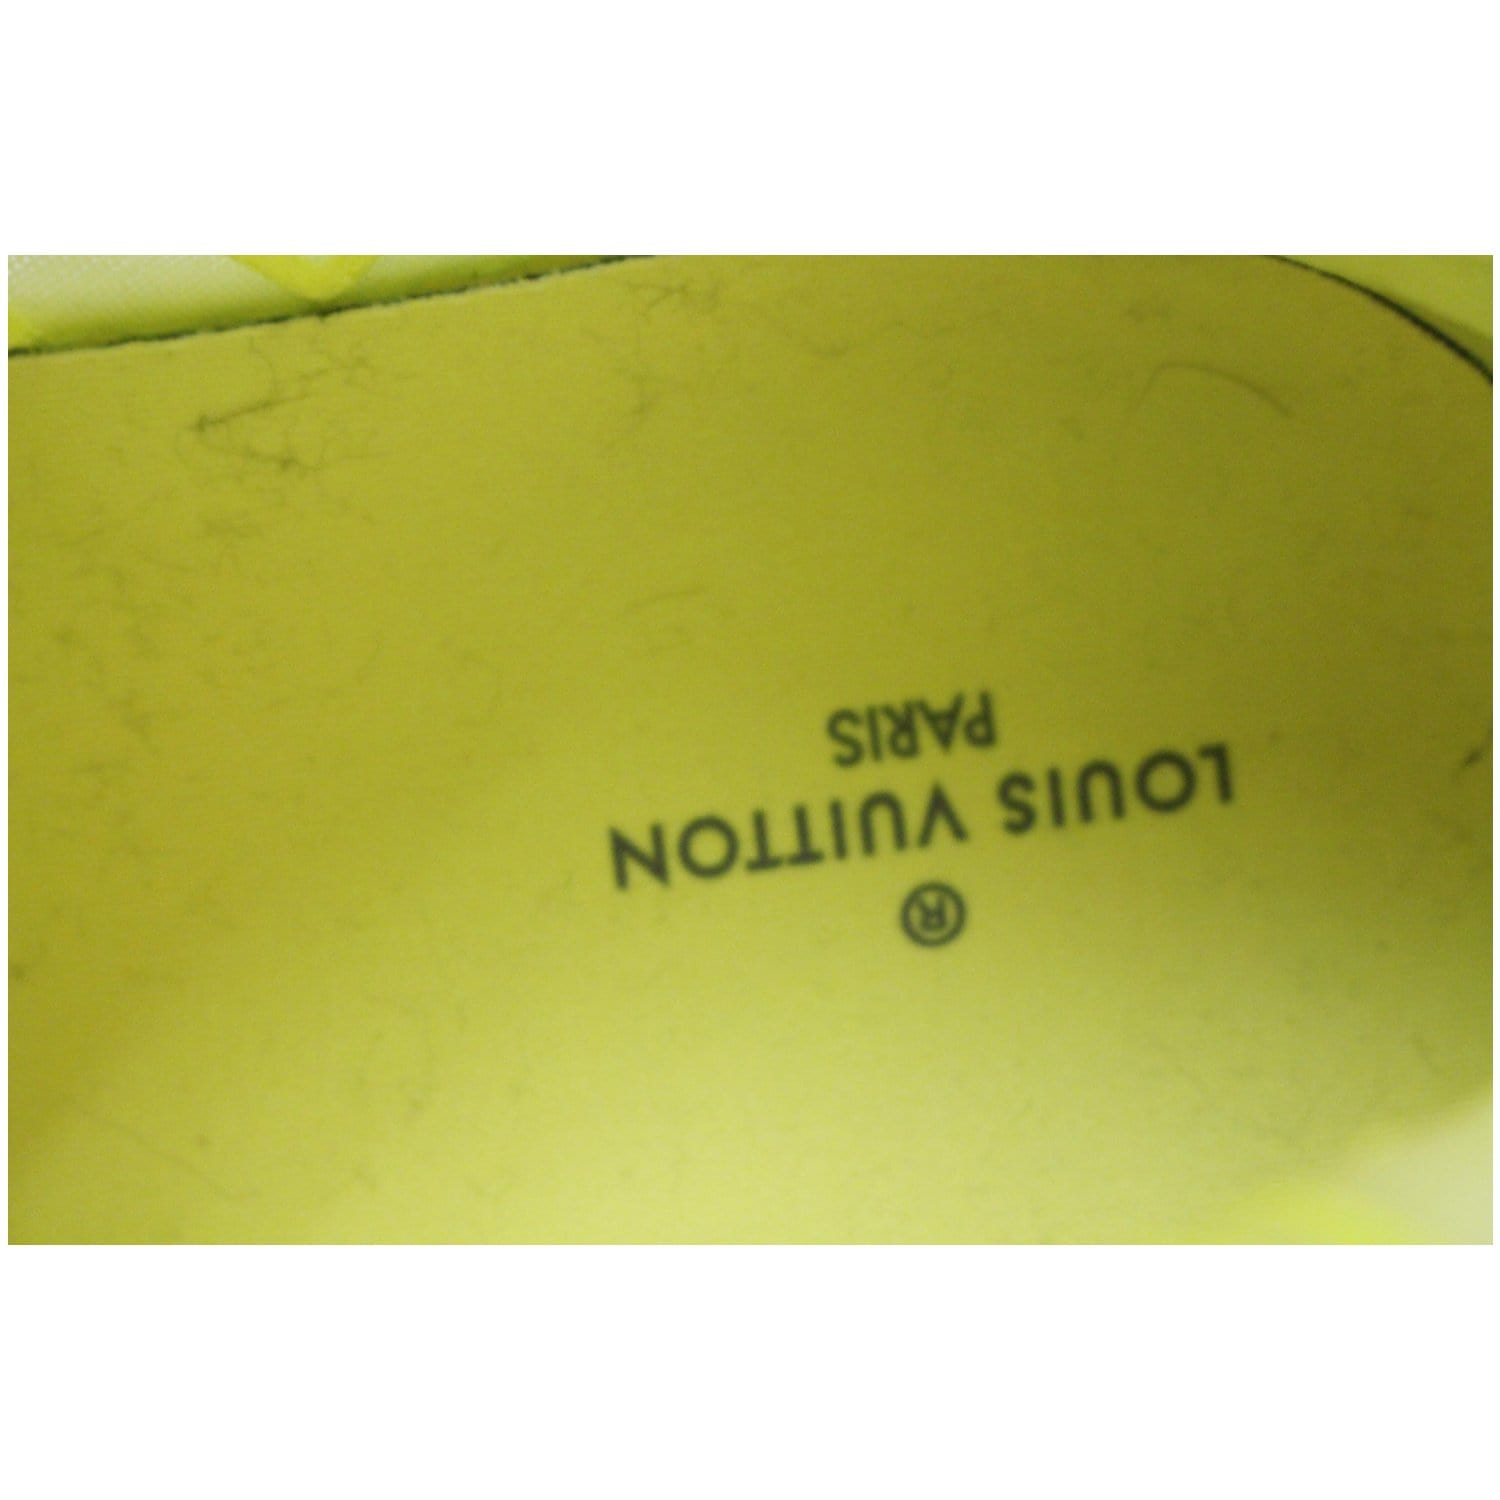 Louis Vuitton Tattoo Monogram High Top Sneaker Boot